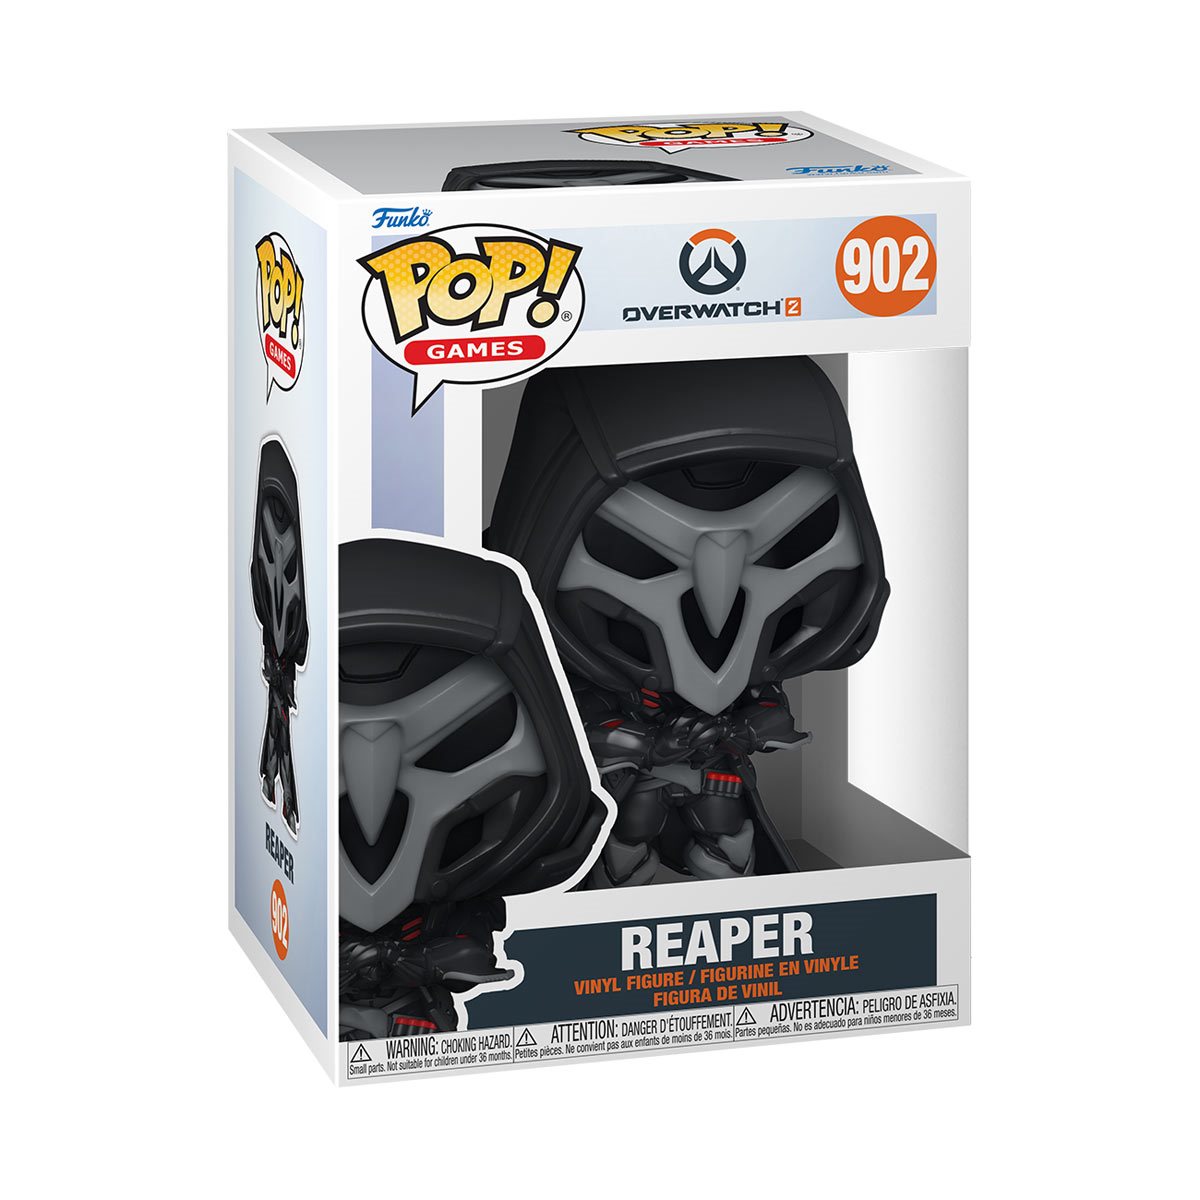 Overwatch 2 Reaper #902 Pop! Vinyl Figure